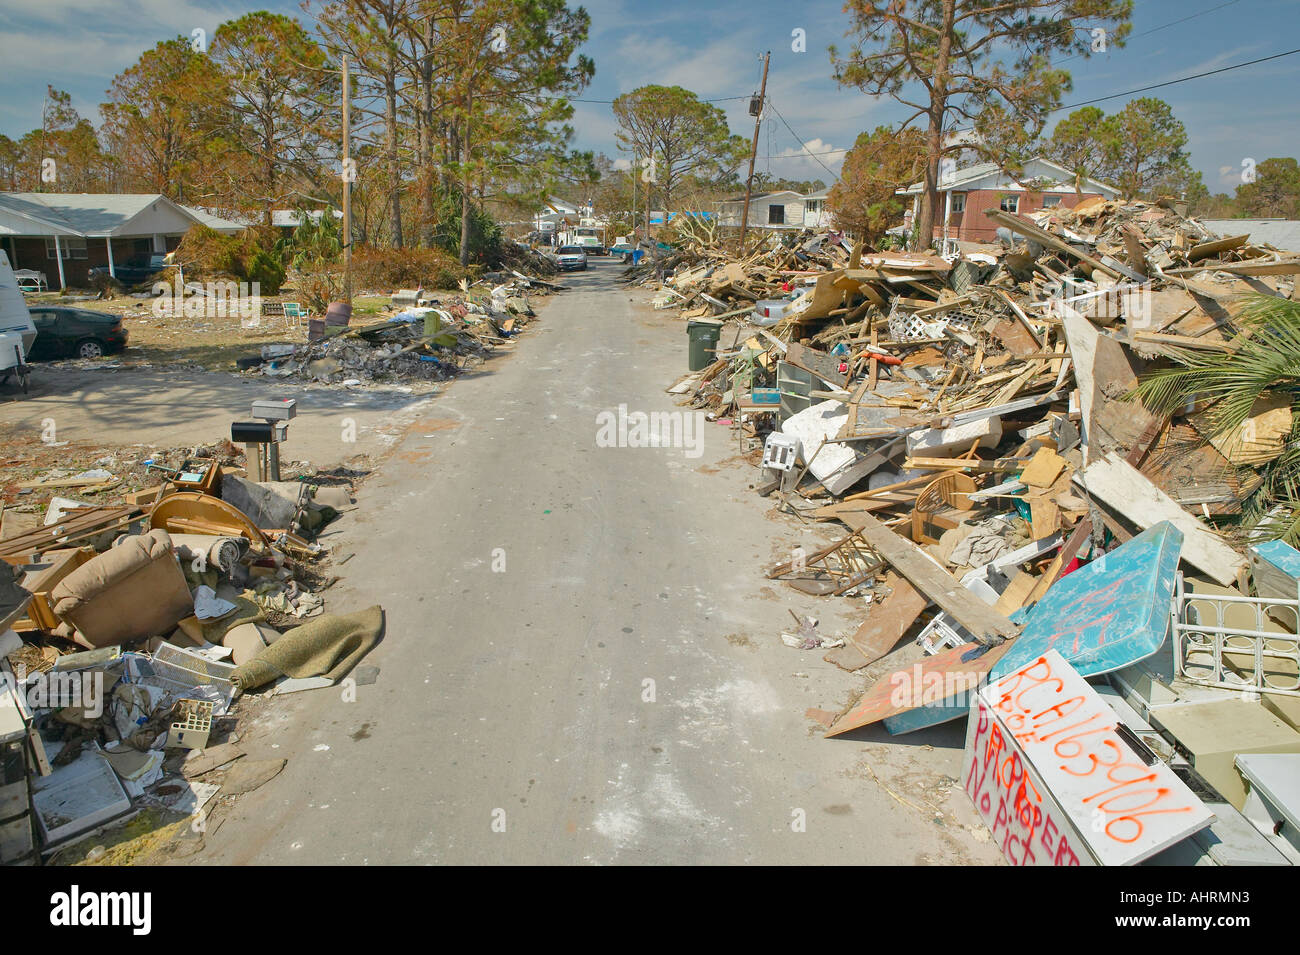 Camino a la destrucción total los escombros y restos de viviendas afectadas por el huracán Iván en Pensacola, Florida Foto de stock